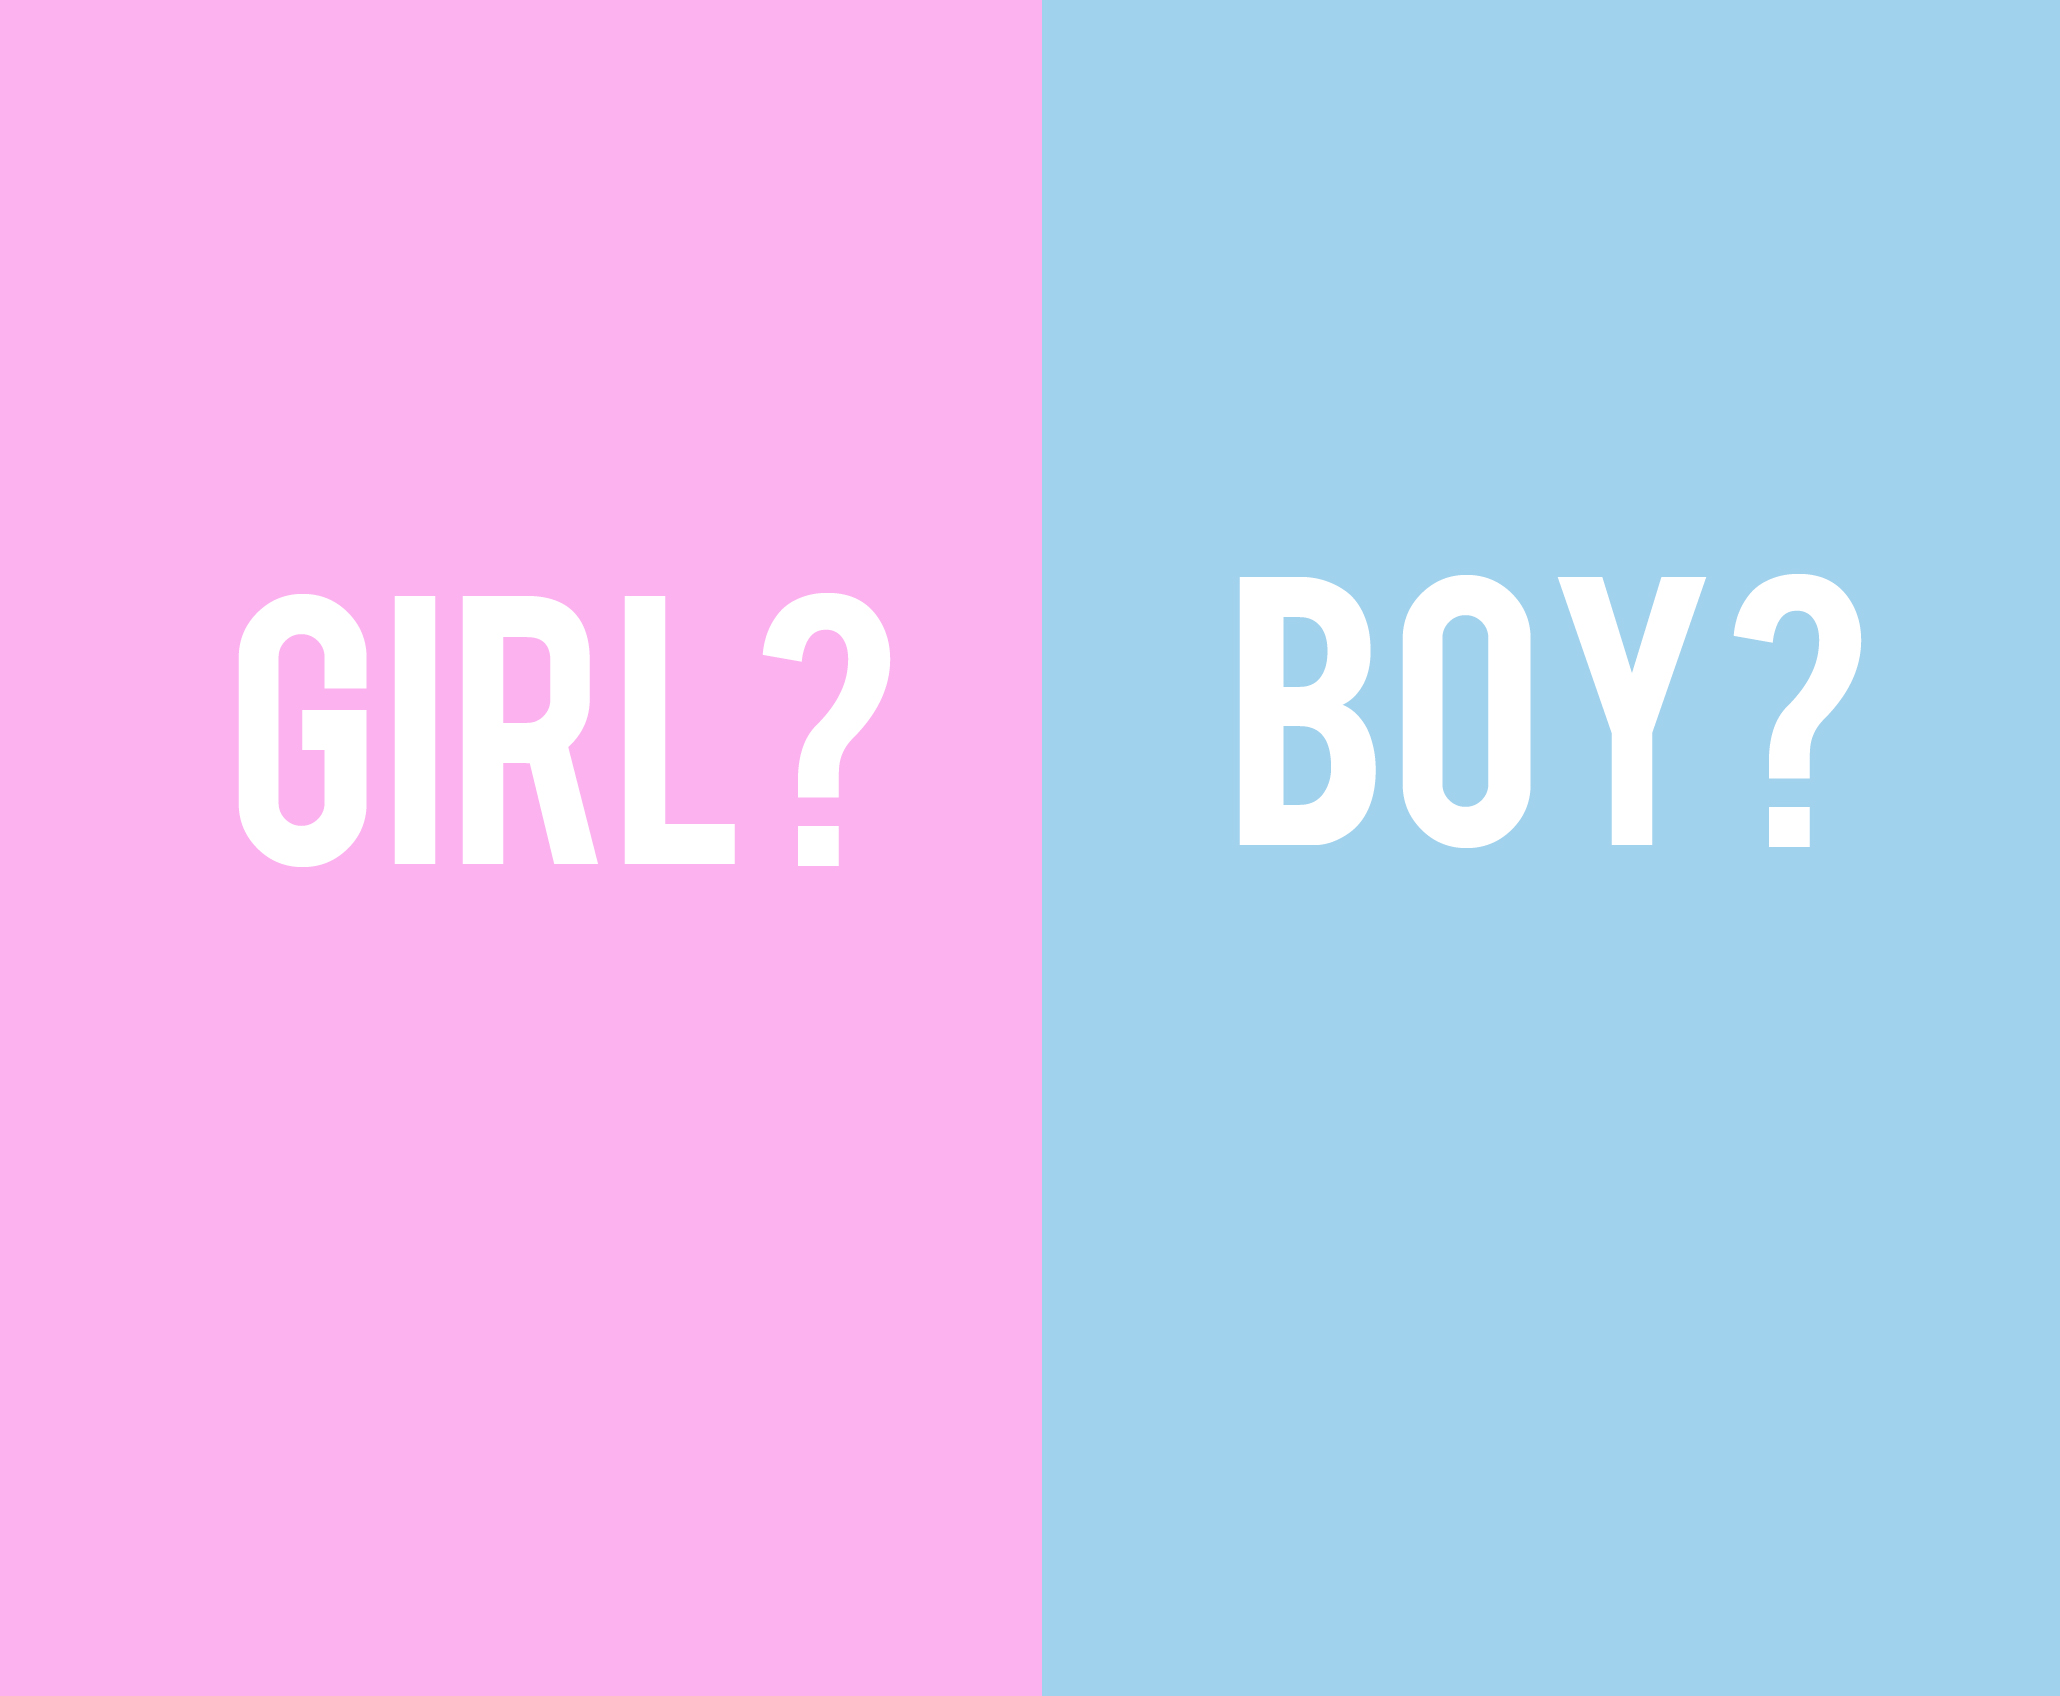 am i having a boy or girl